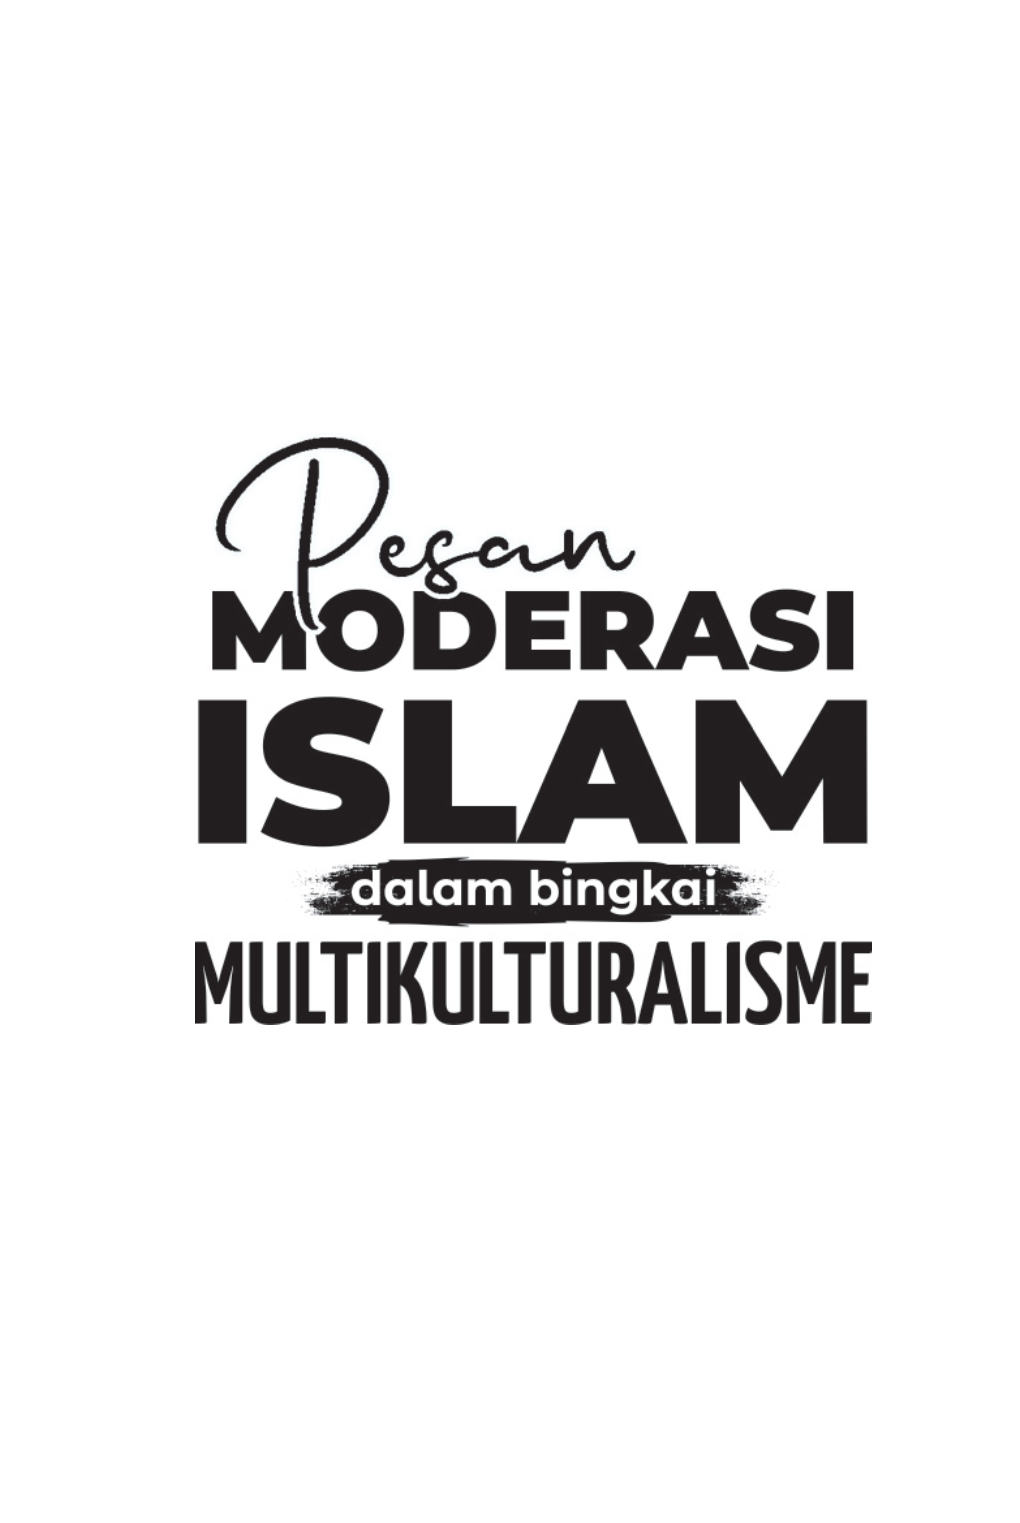 Pesan Moderasi Islam Dalam Bingkai Multikultural.Indd